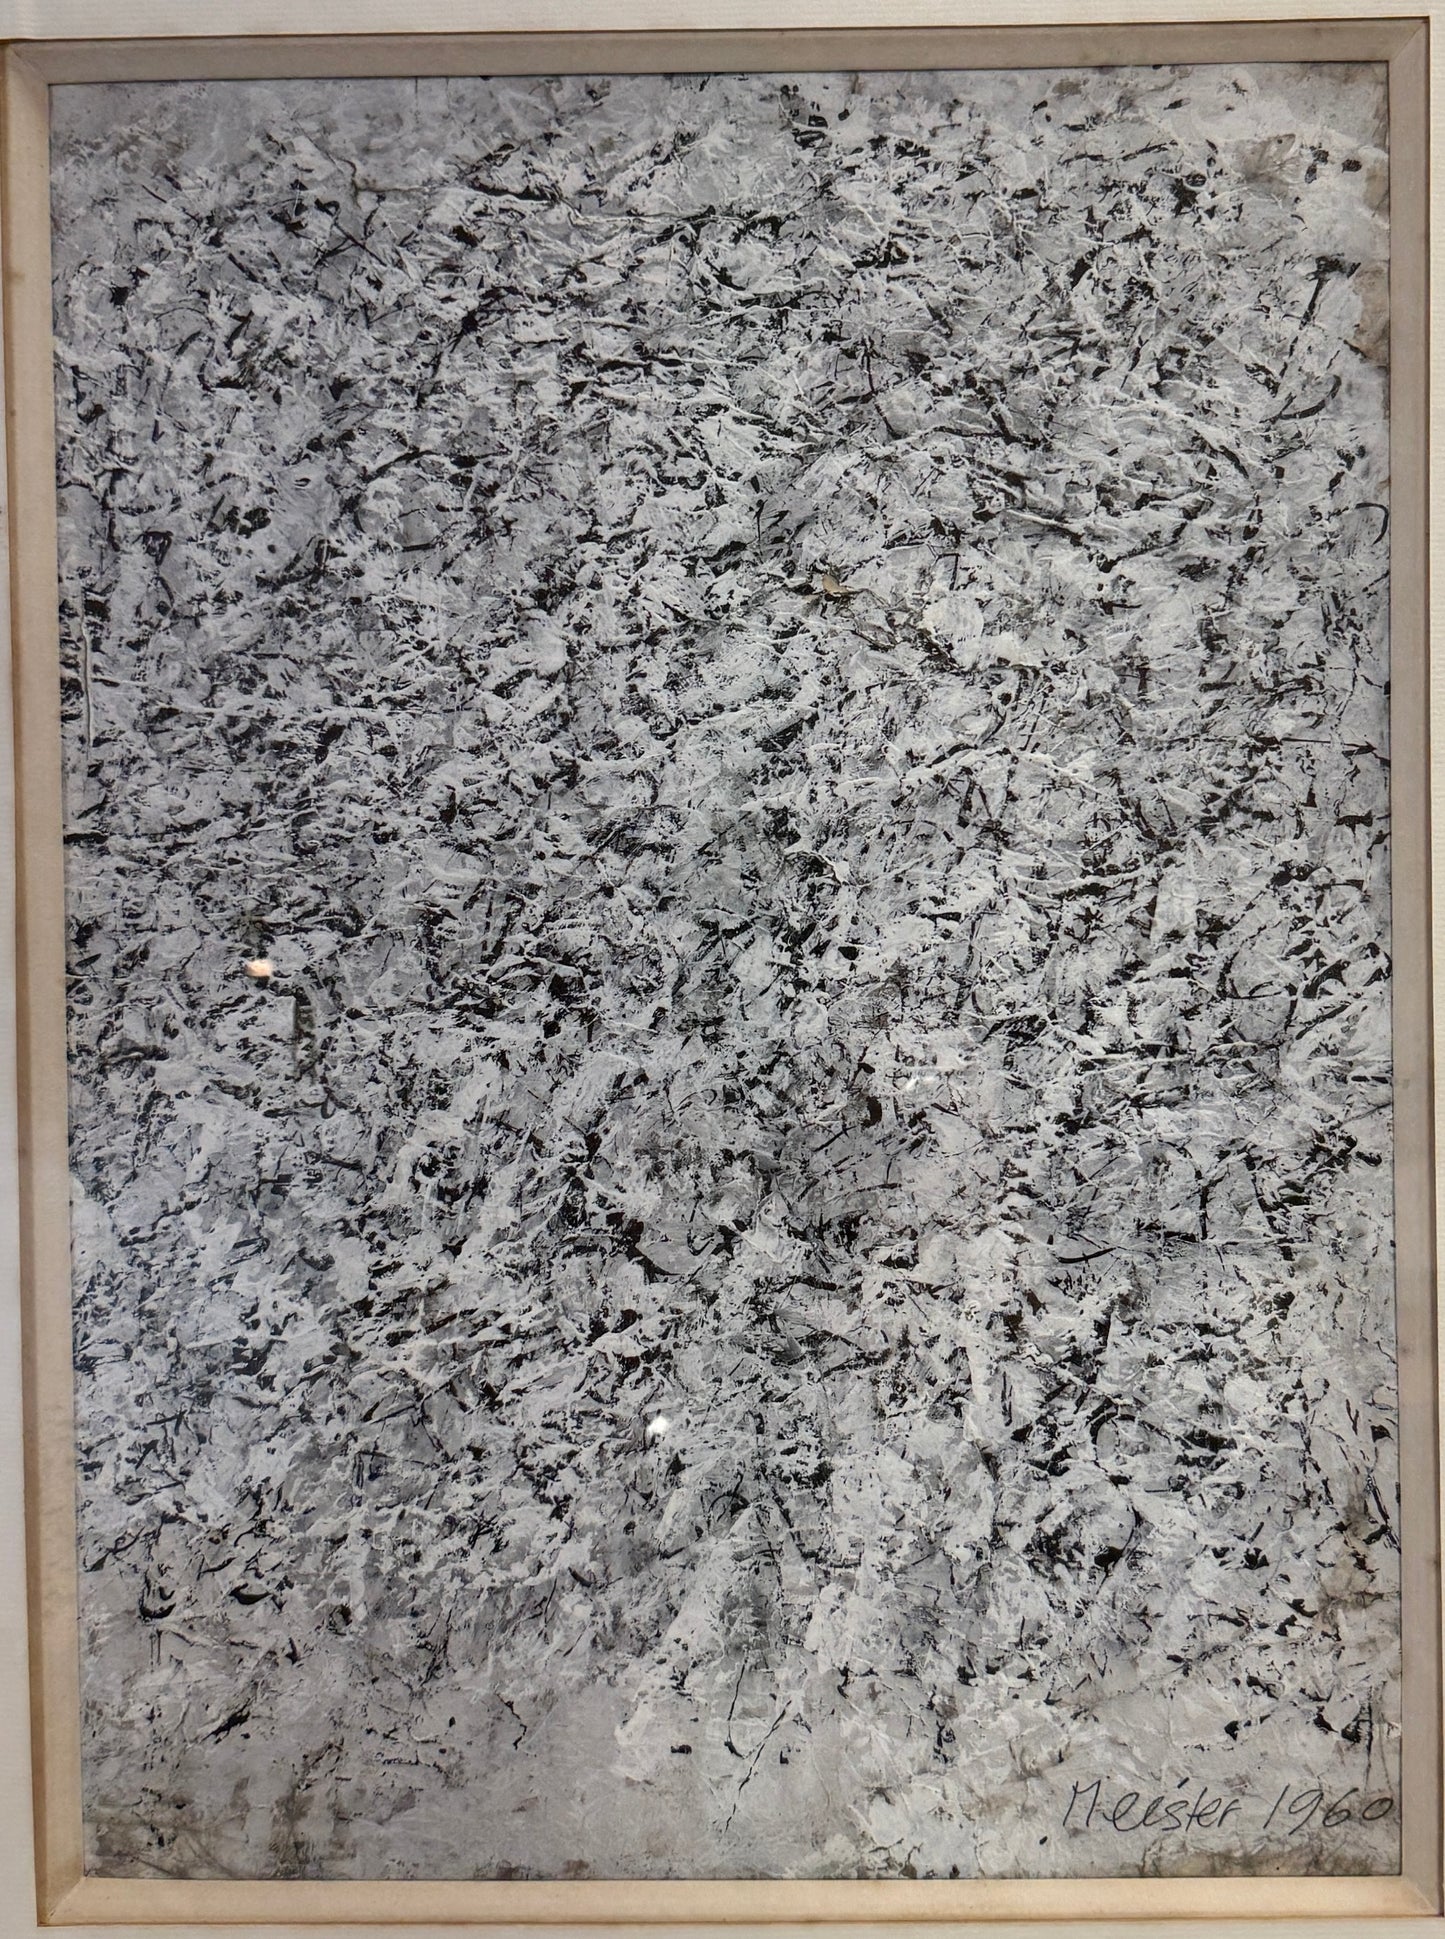 Jean Marie MESTER, Suisse, abstraction en huile sur papier